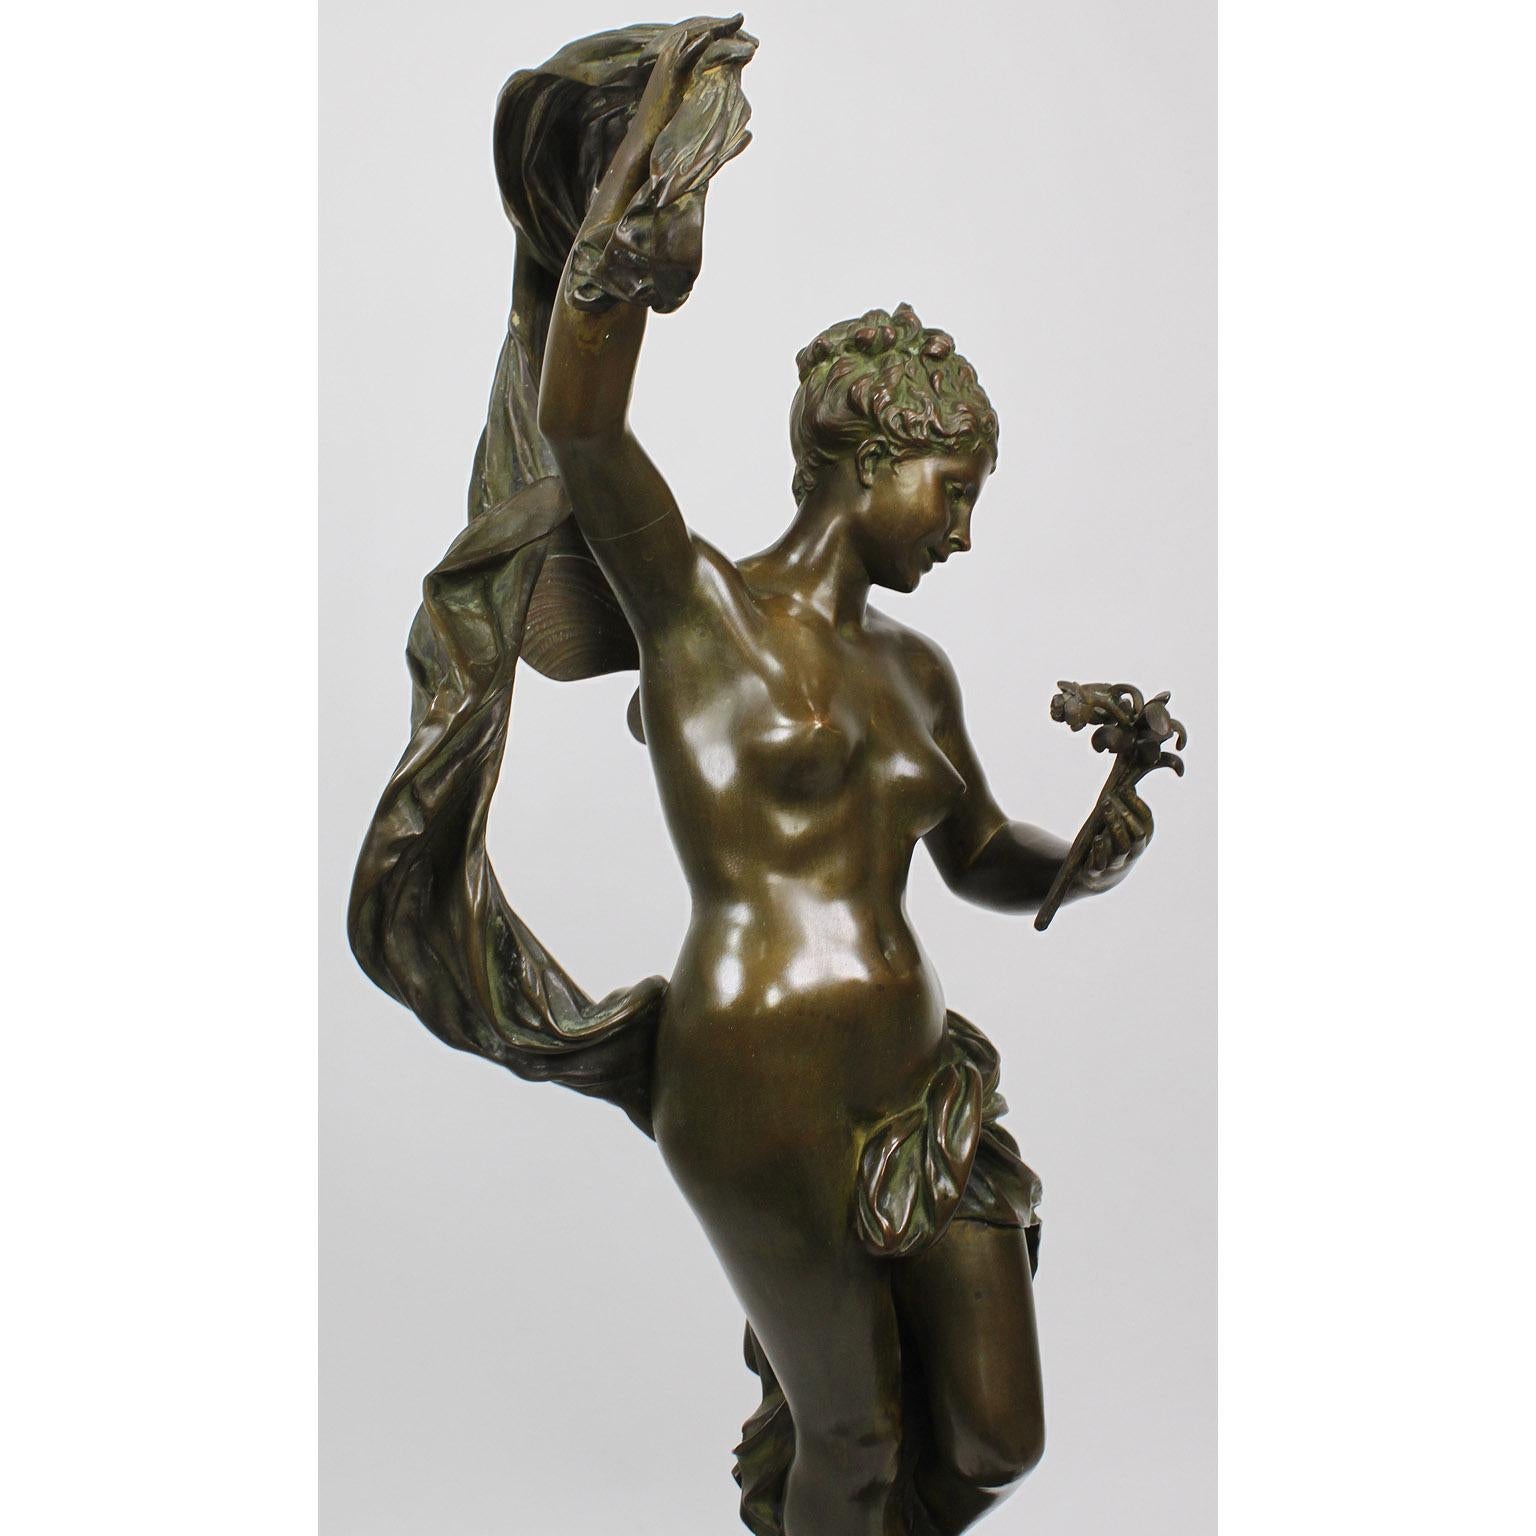 Luca Madrassi, a Fine Italian Bronze of a Nude 